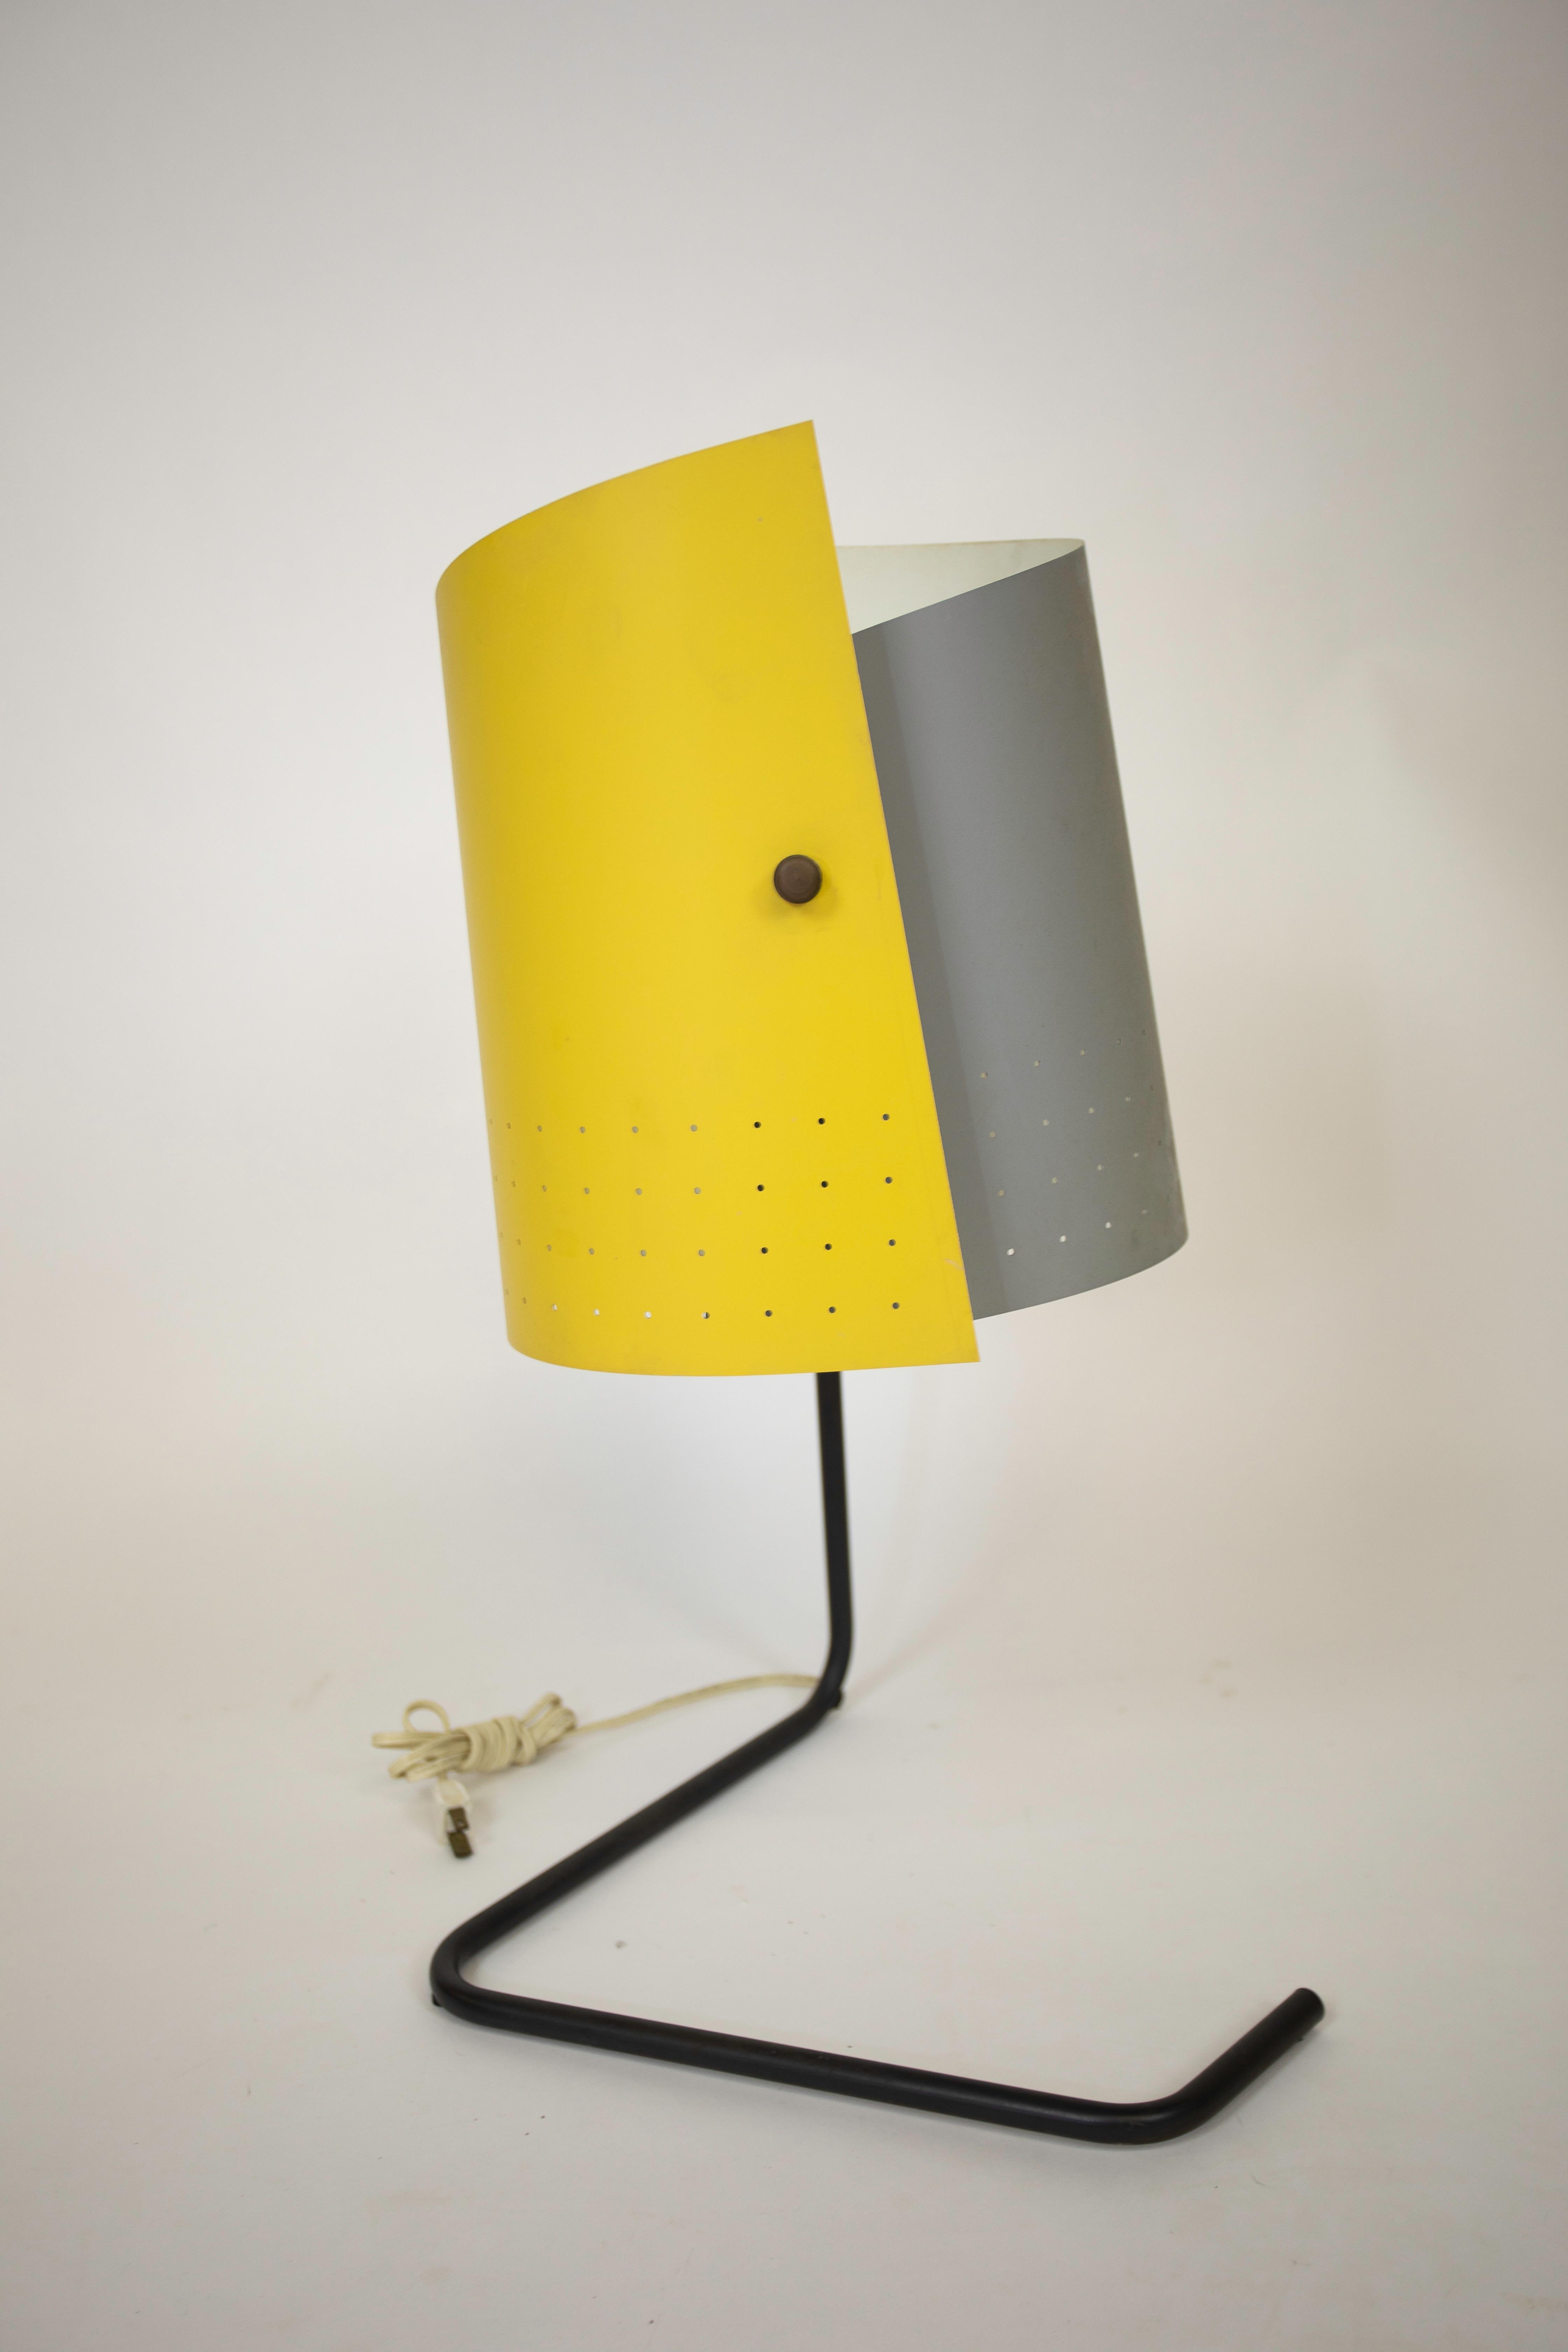 Fabriqué par Heifetz Manufacturing en 1951.
Cette lampe était l'une des 10 lampes choisies pour le concours d'éclairage à faible coût du Musée d'art moderne en 1951.
Mention honorable.
Peinture et surface d'origine.